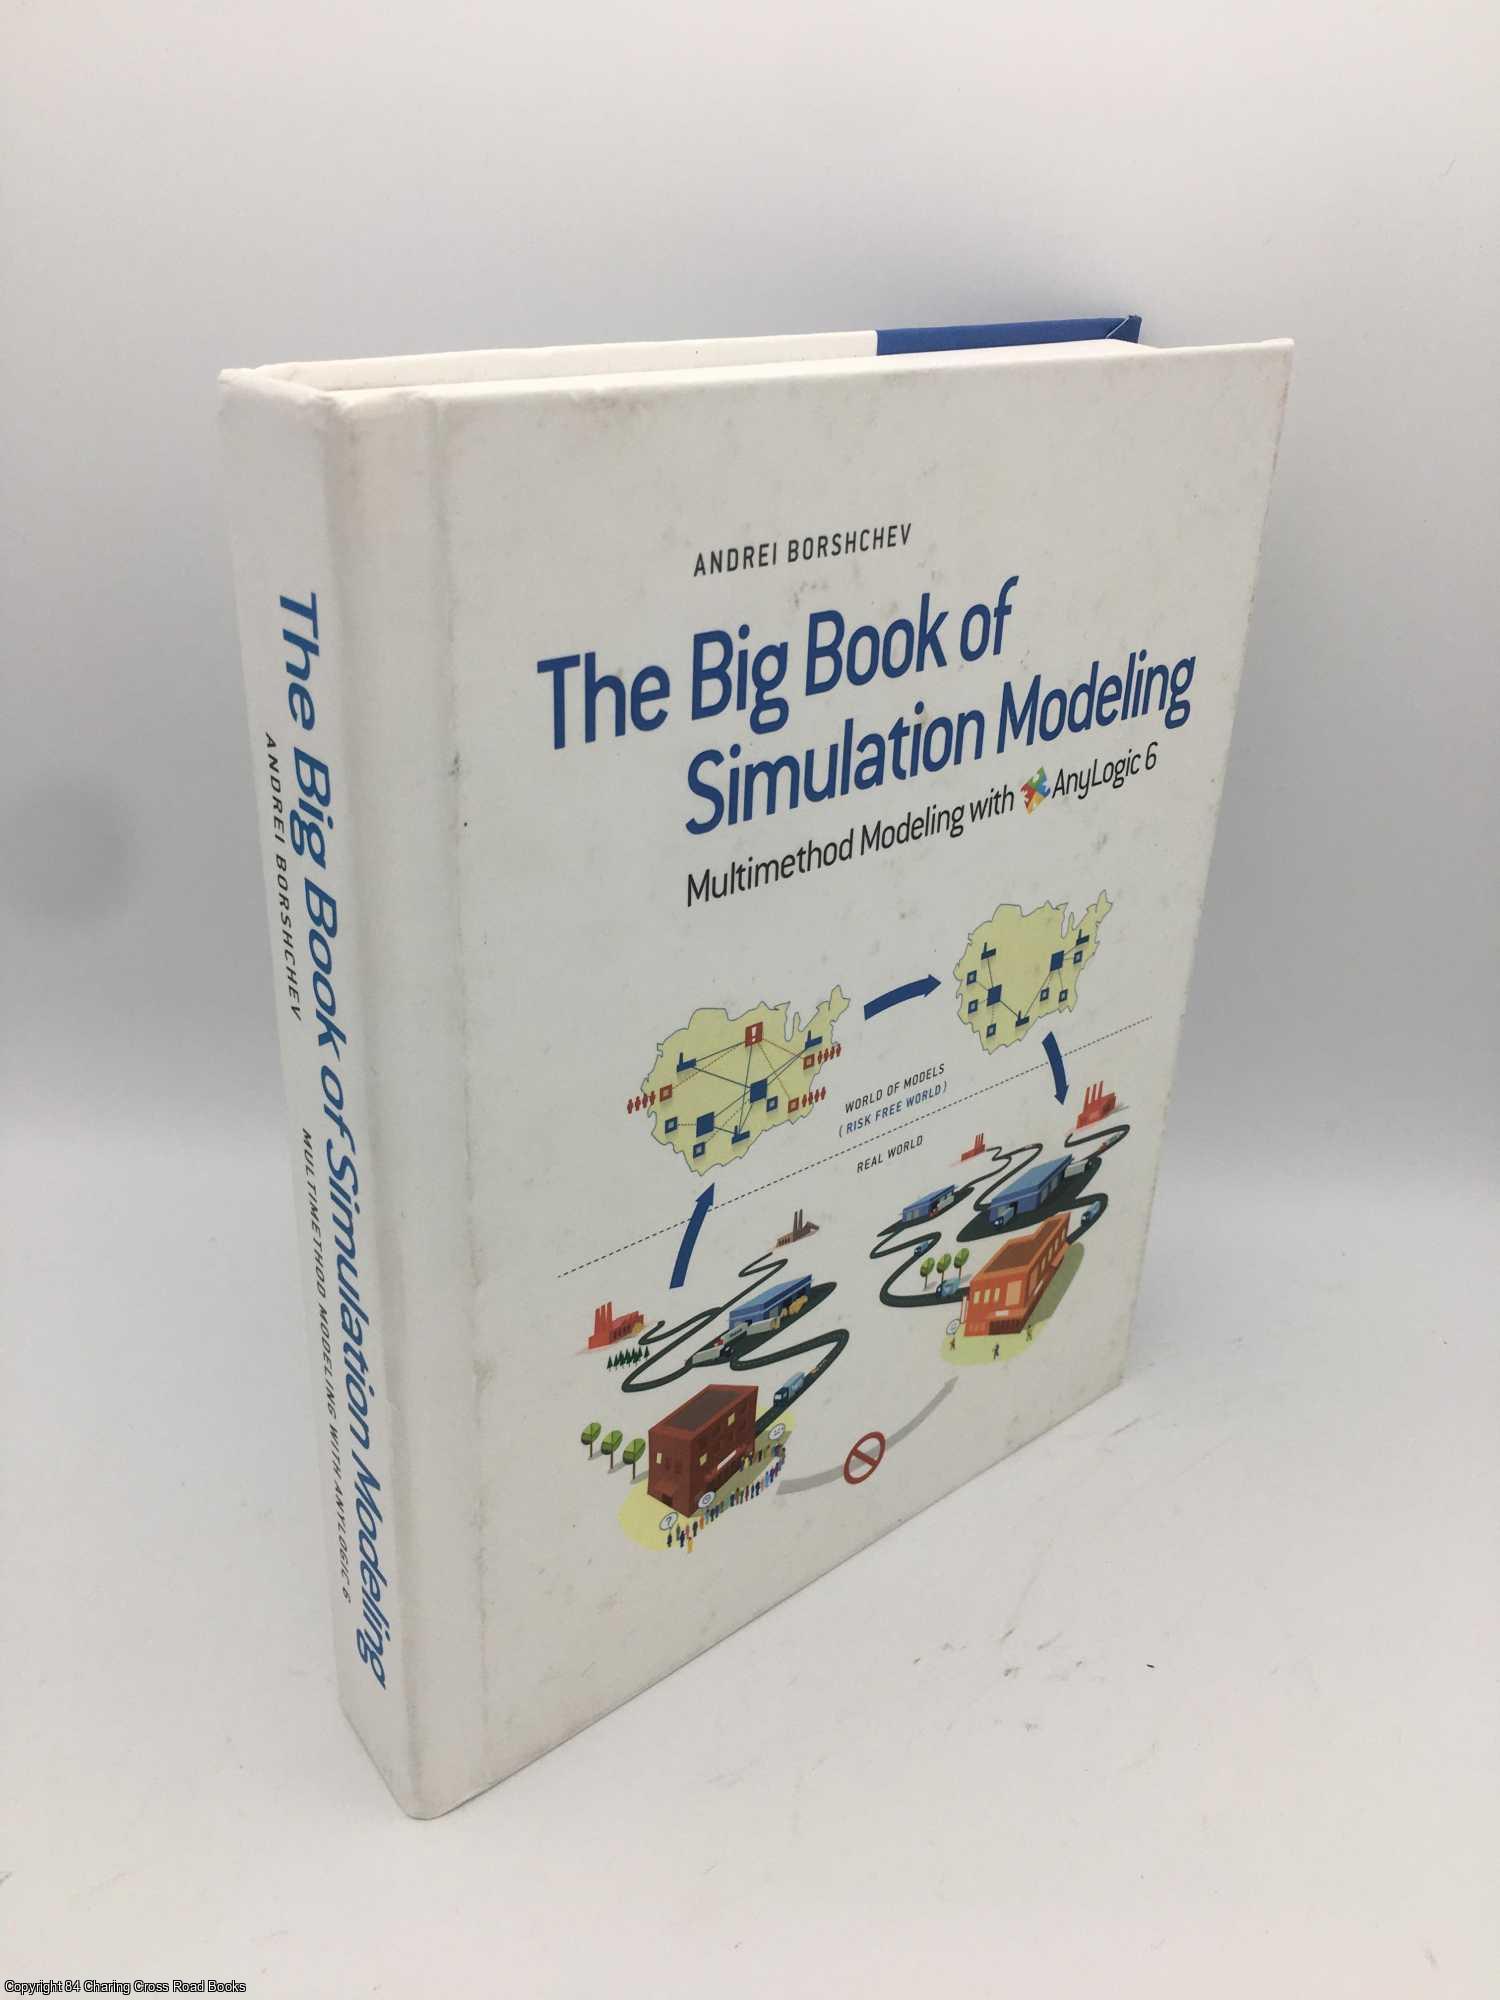 Borshchev, Andrei - The Big Book of Simulation Modeling: Multimethod Modeling with Anylogic 6